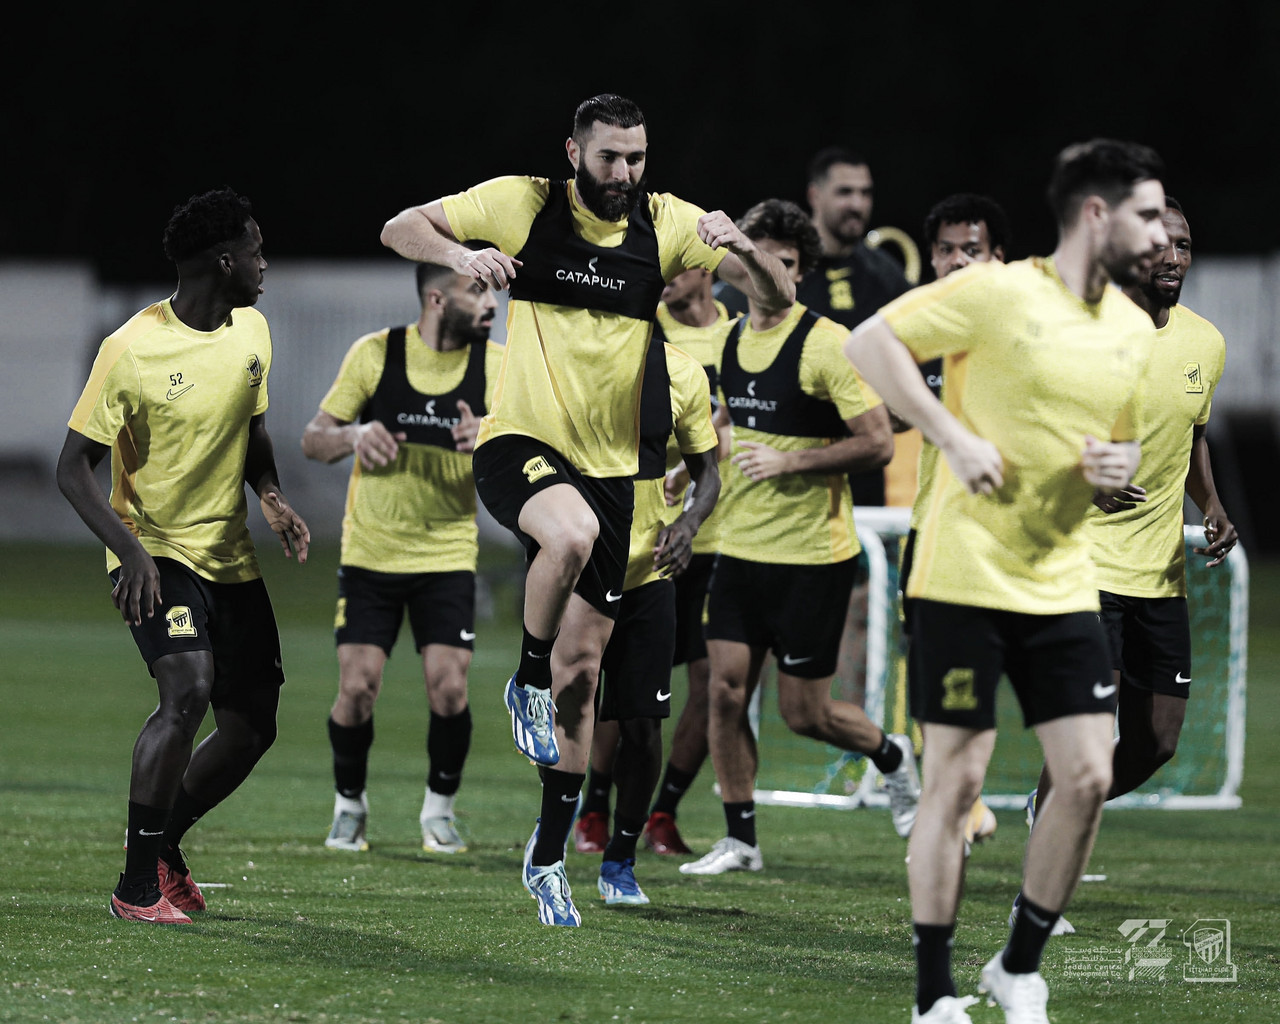 Golo de Jota dá vitória ao Al-Ittihad frente ao Sepahan